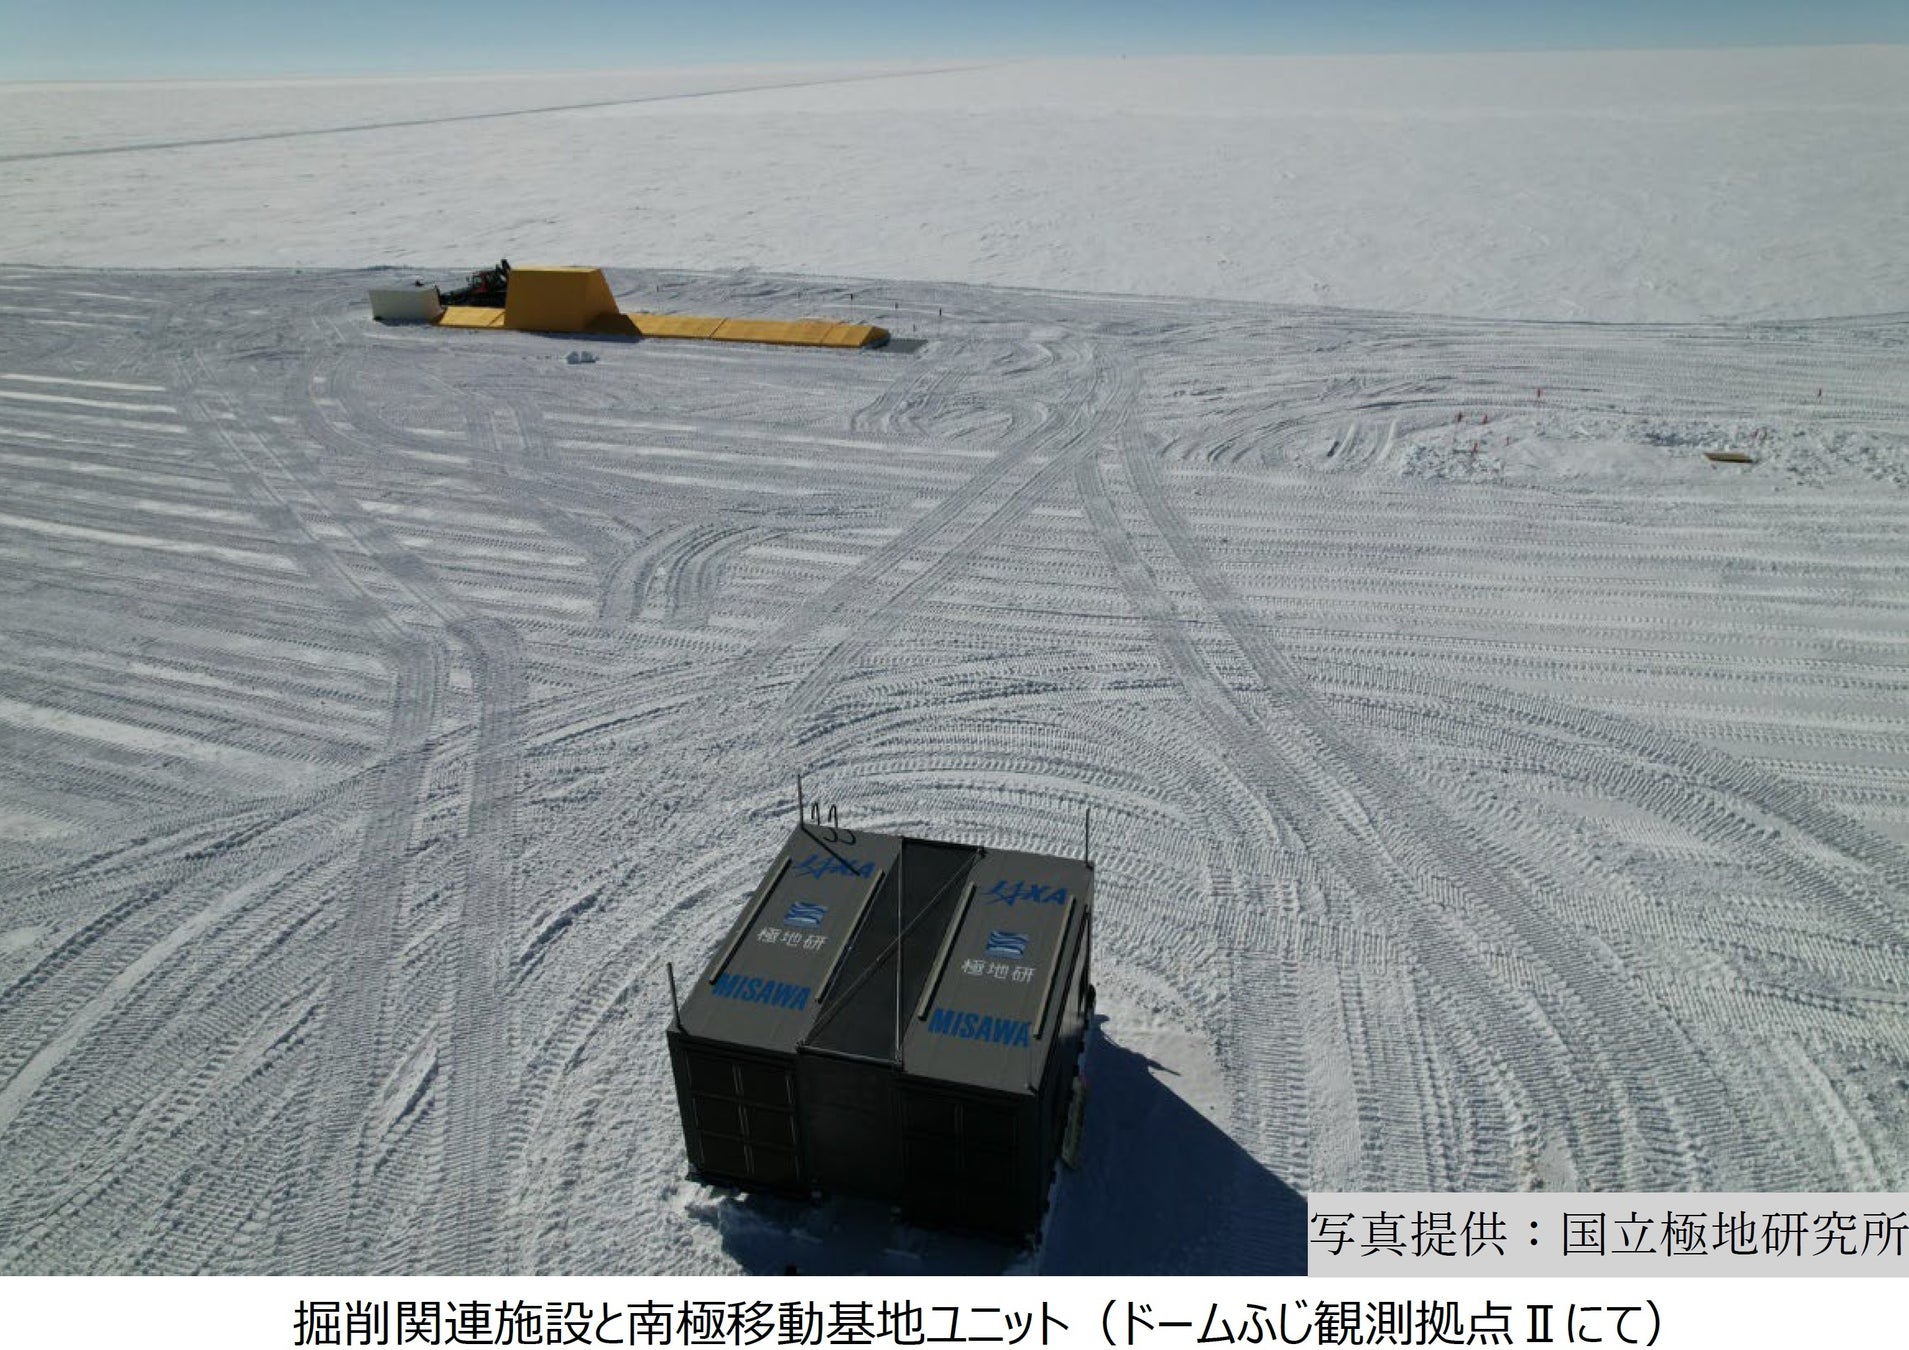 ミサワホーム社員2名が第65次南極地域観測隊に参加のサブ画像1